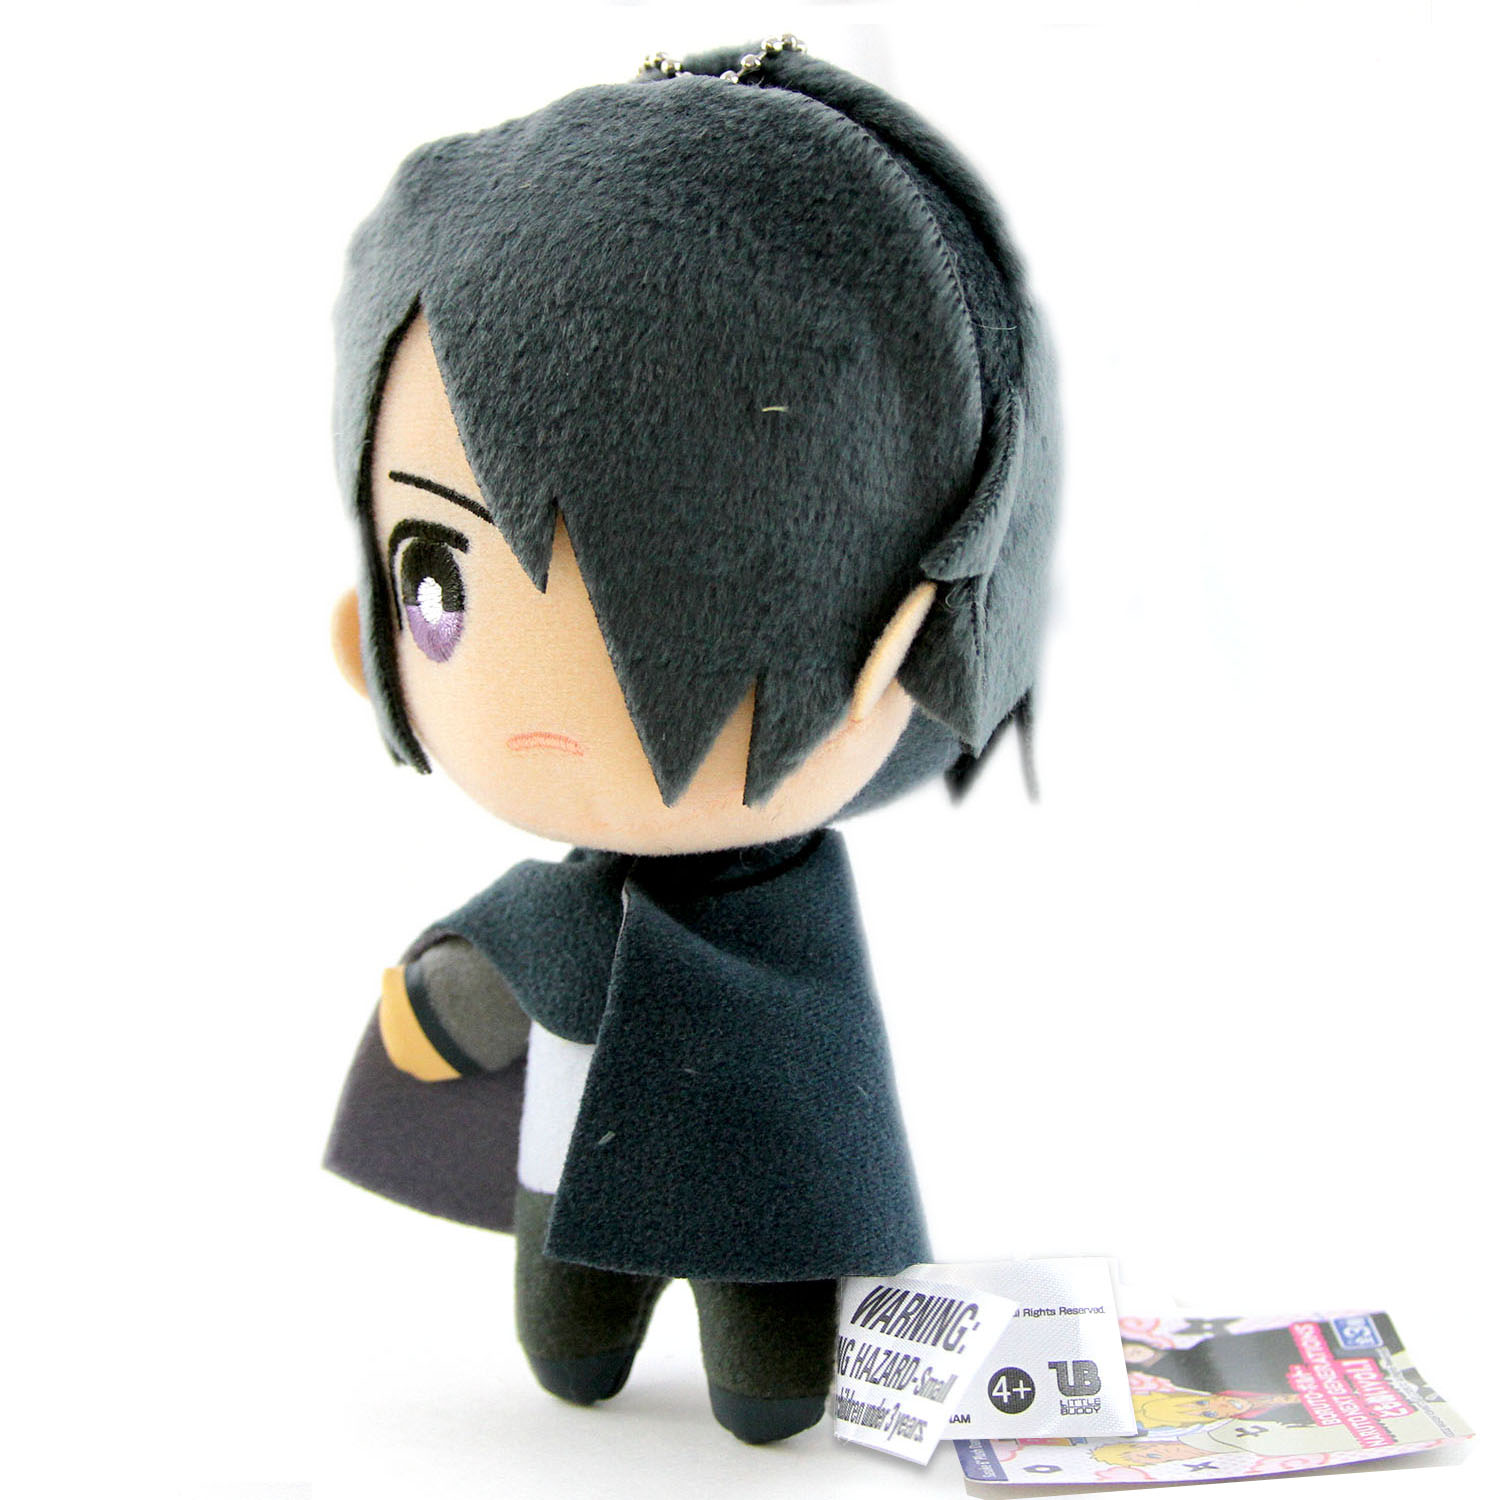 sasuke plush doll